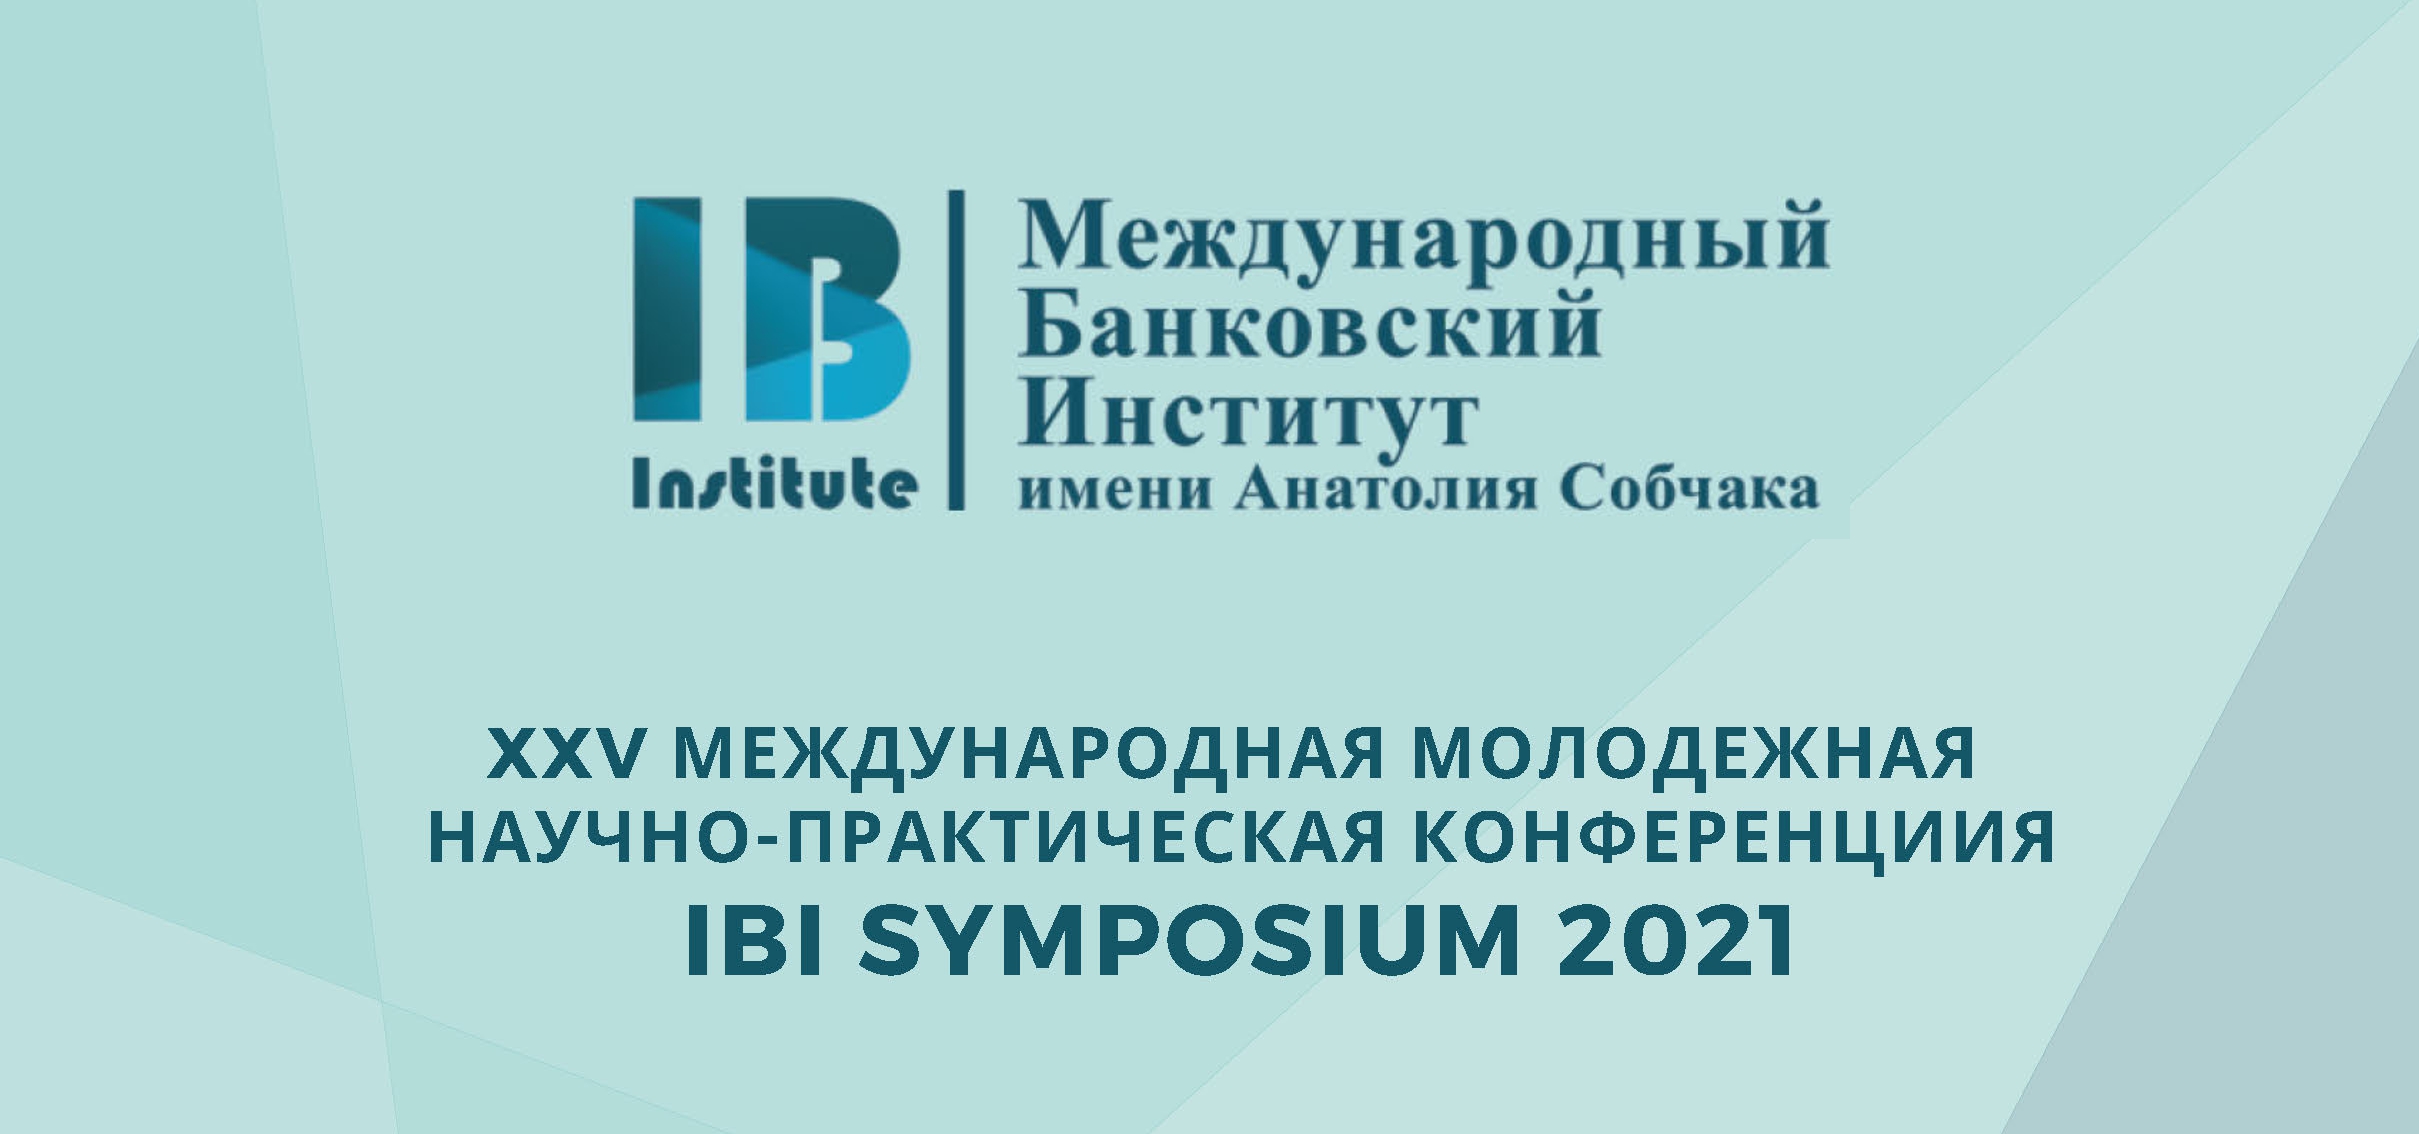 Студенты филиала приняли участие в международной научно-практической конференции «IBI SYMPOSIUM 2021»